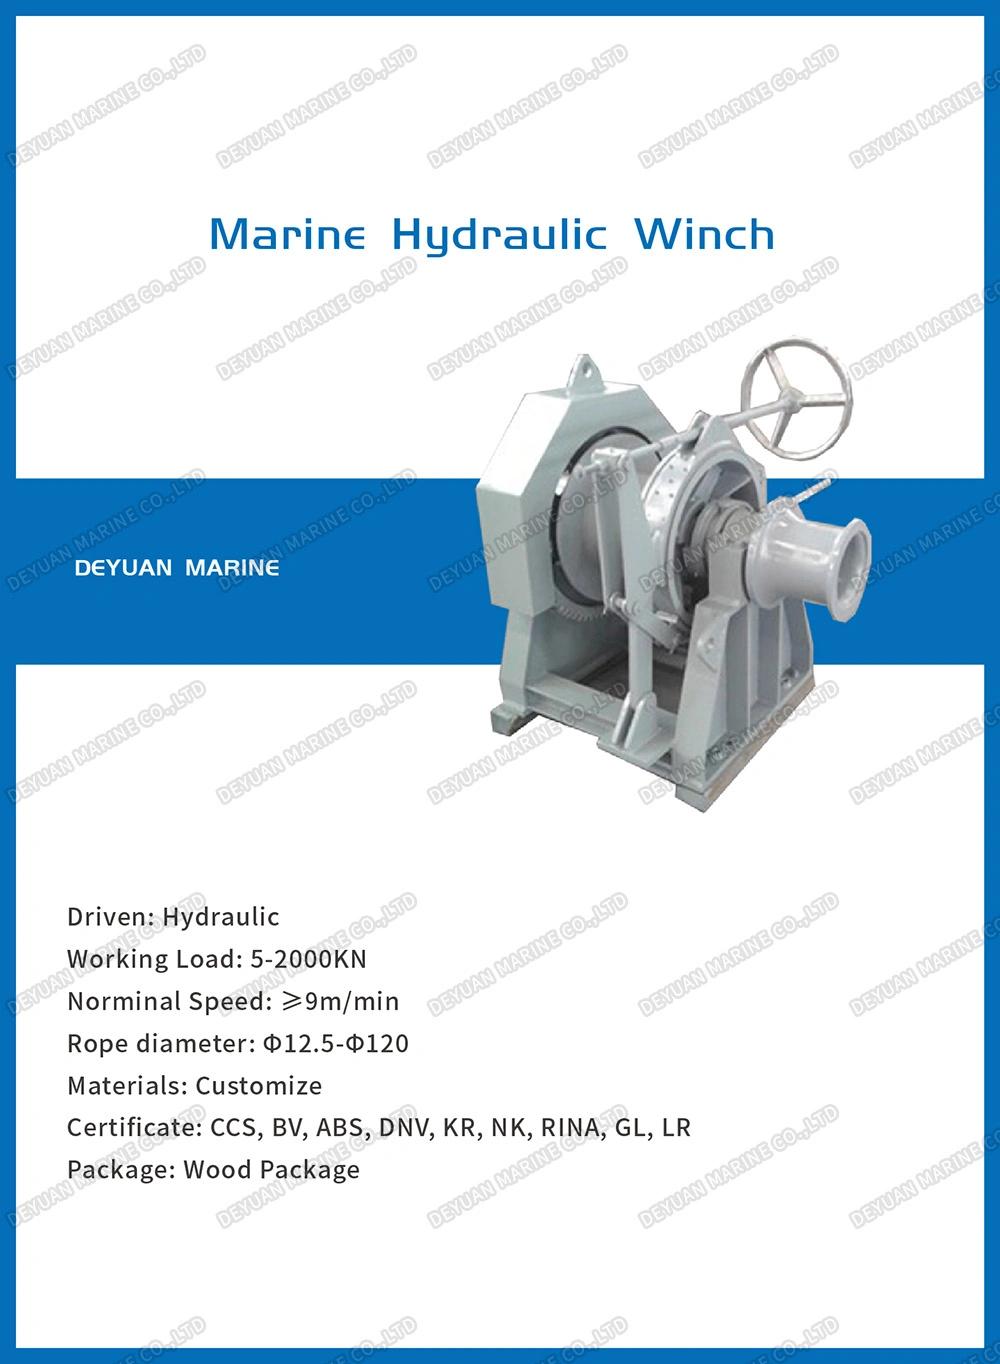 Marine Hydraulic Multi Drum Mooring Winch for Boat